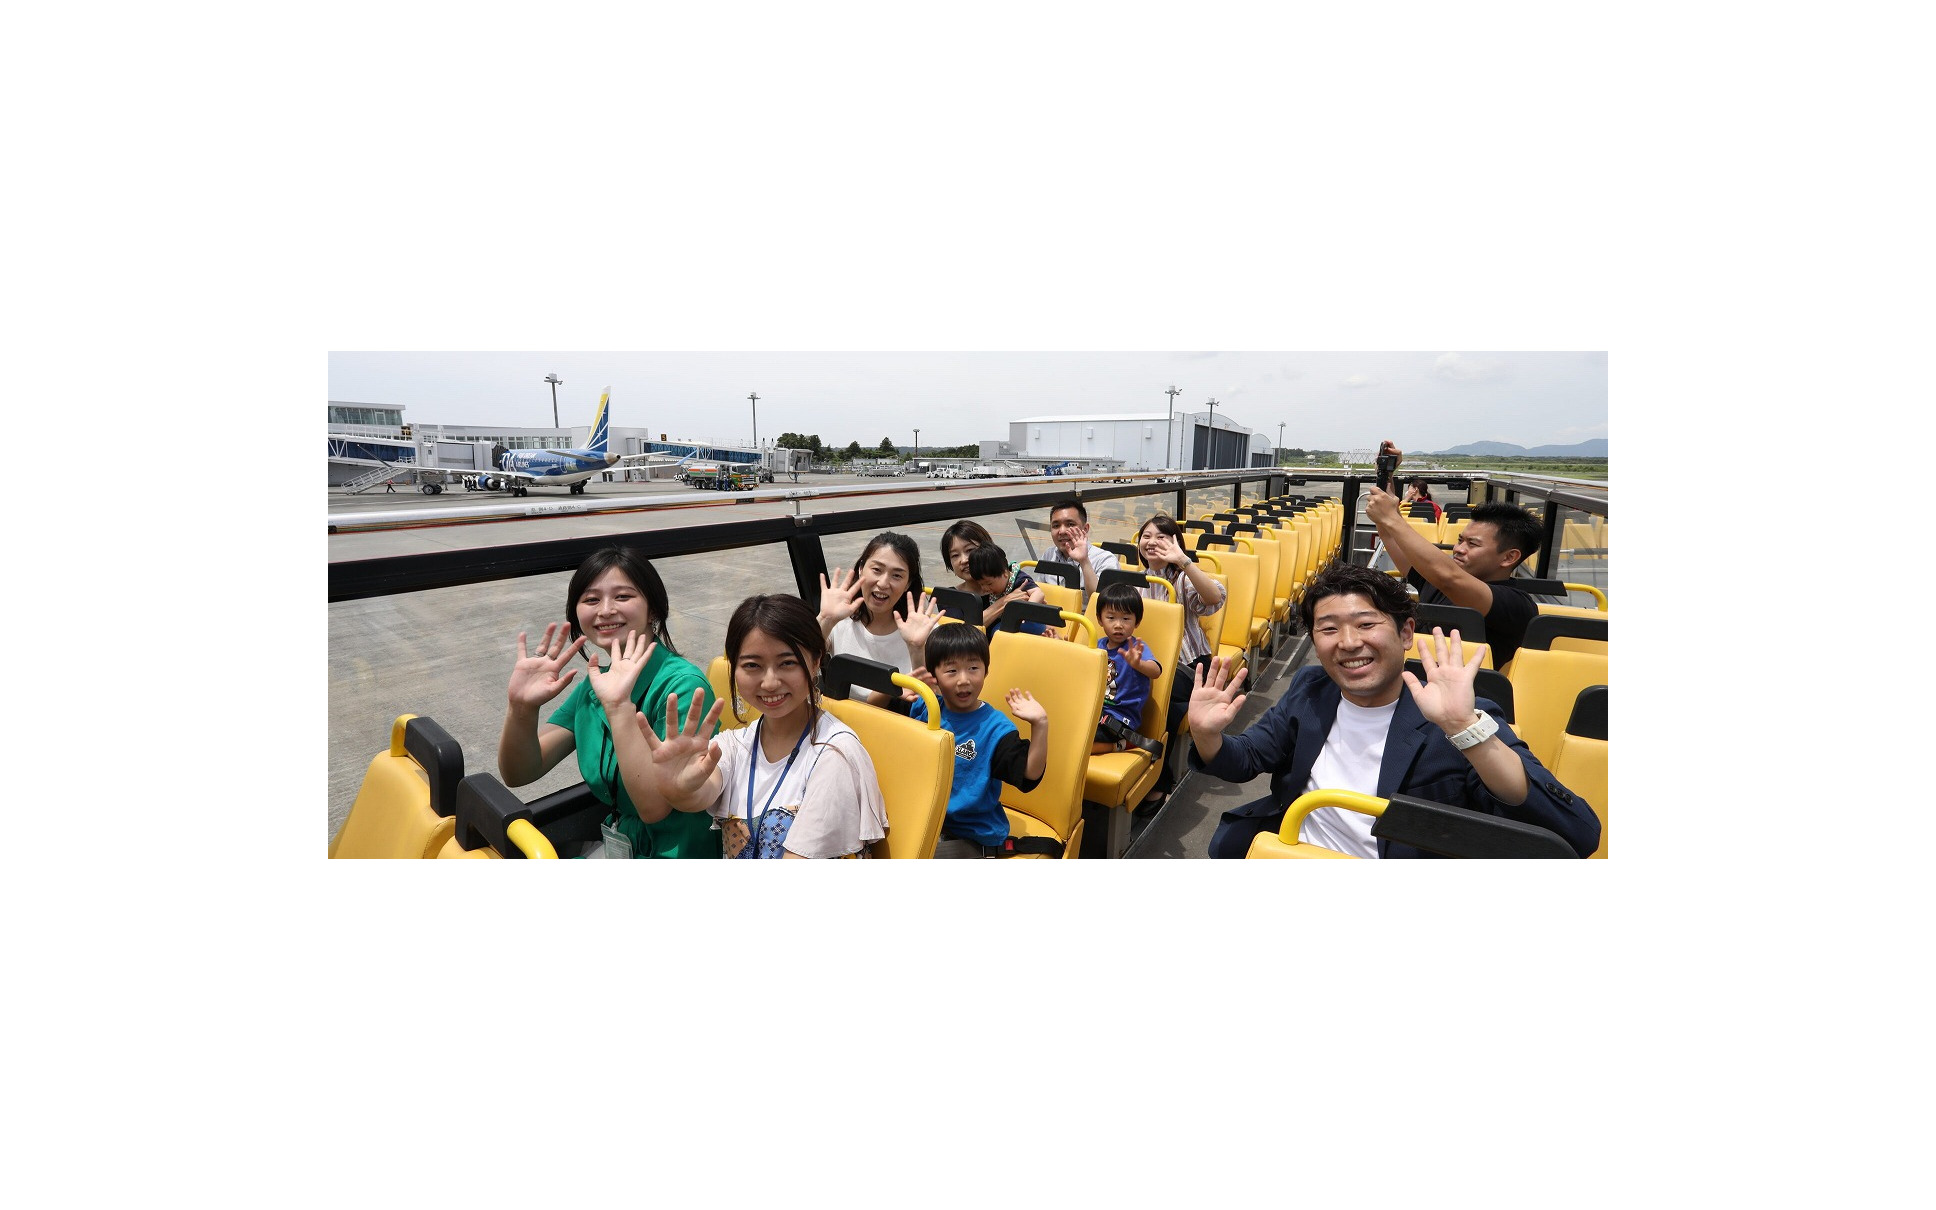 2階建てのオープントップバス「SKY BUS」で富士山静岡空港の制限エリア内を走行